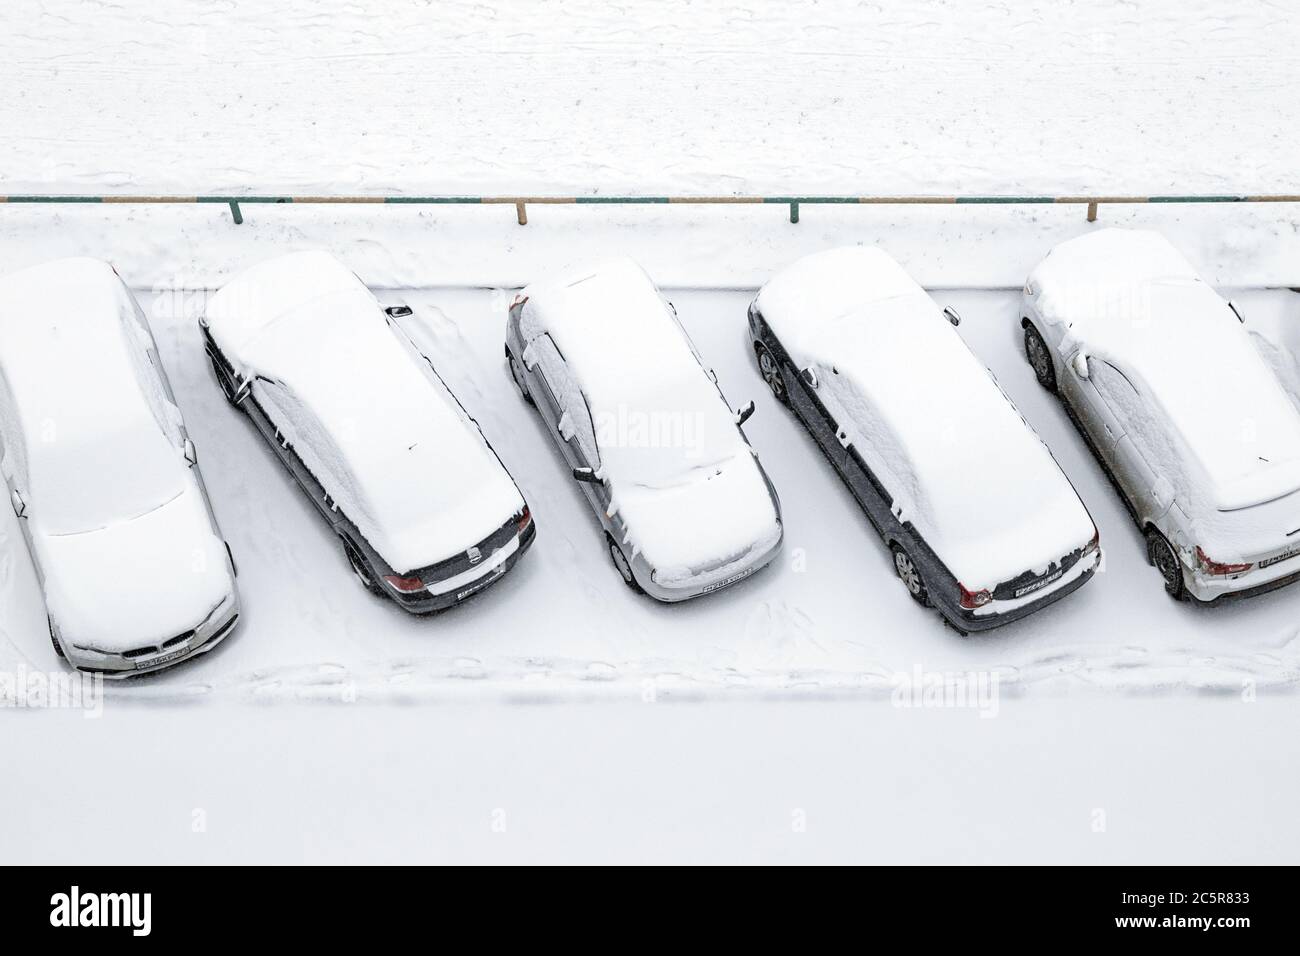 Moskau 28/01/2020 Autos auf offenem Parkplatz mit Schnee bedeckt, Draufsicht Stockfoto